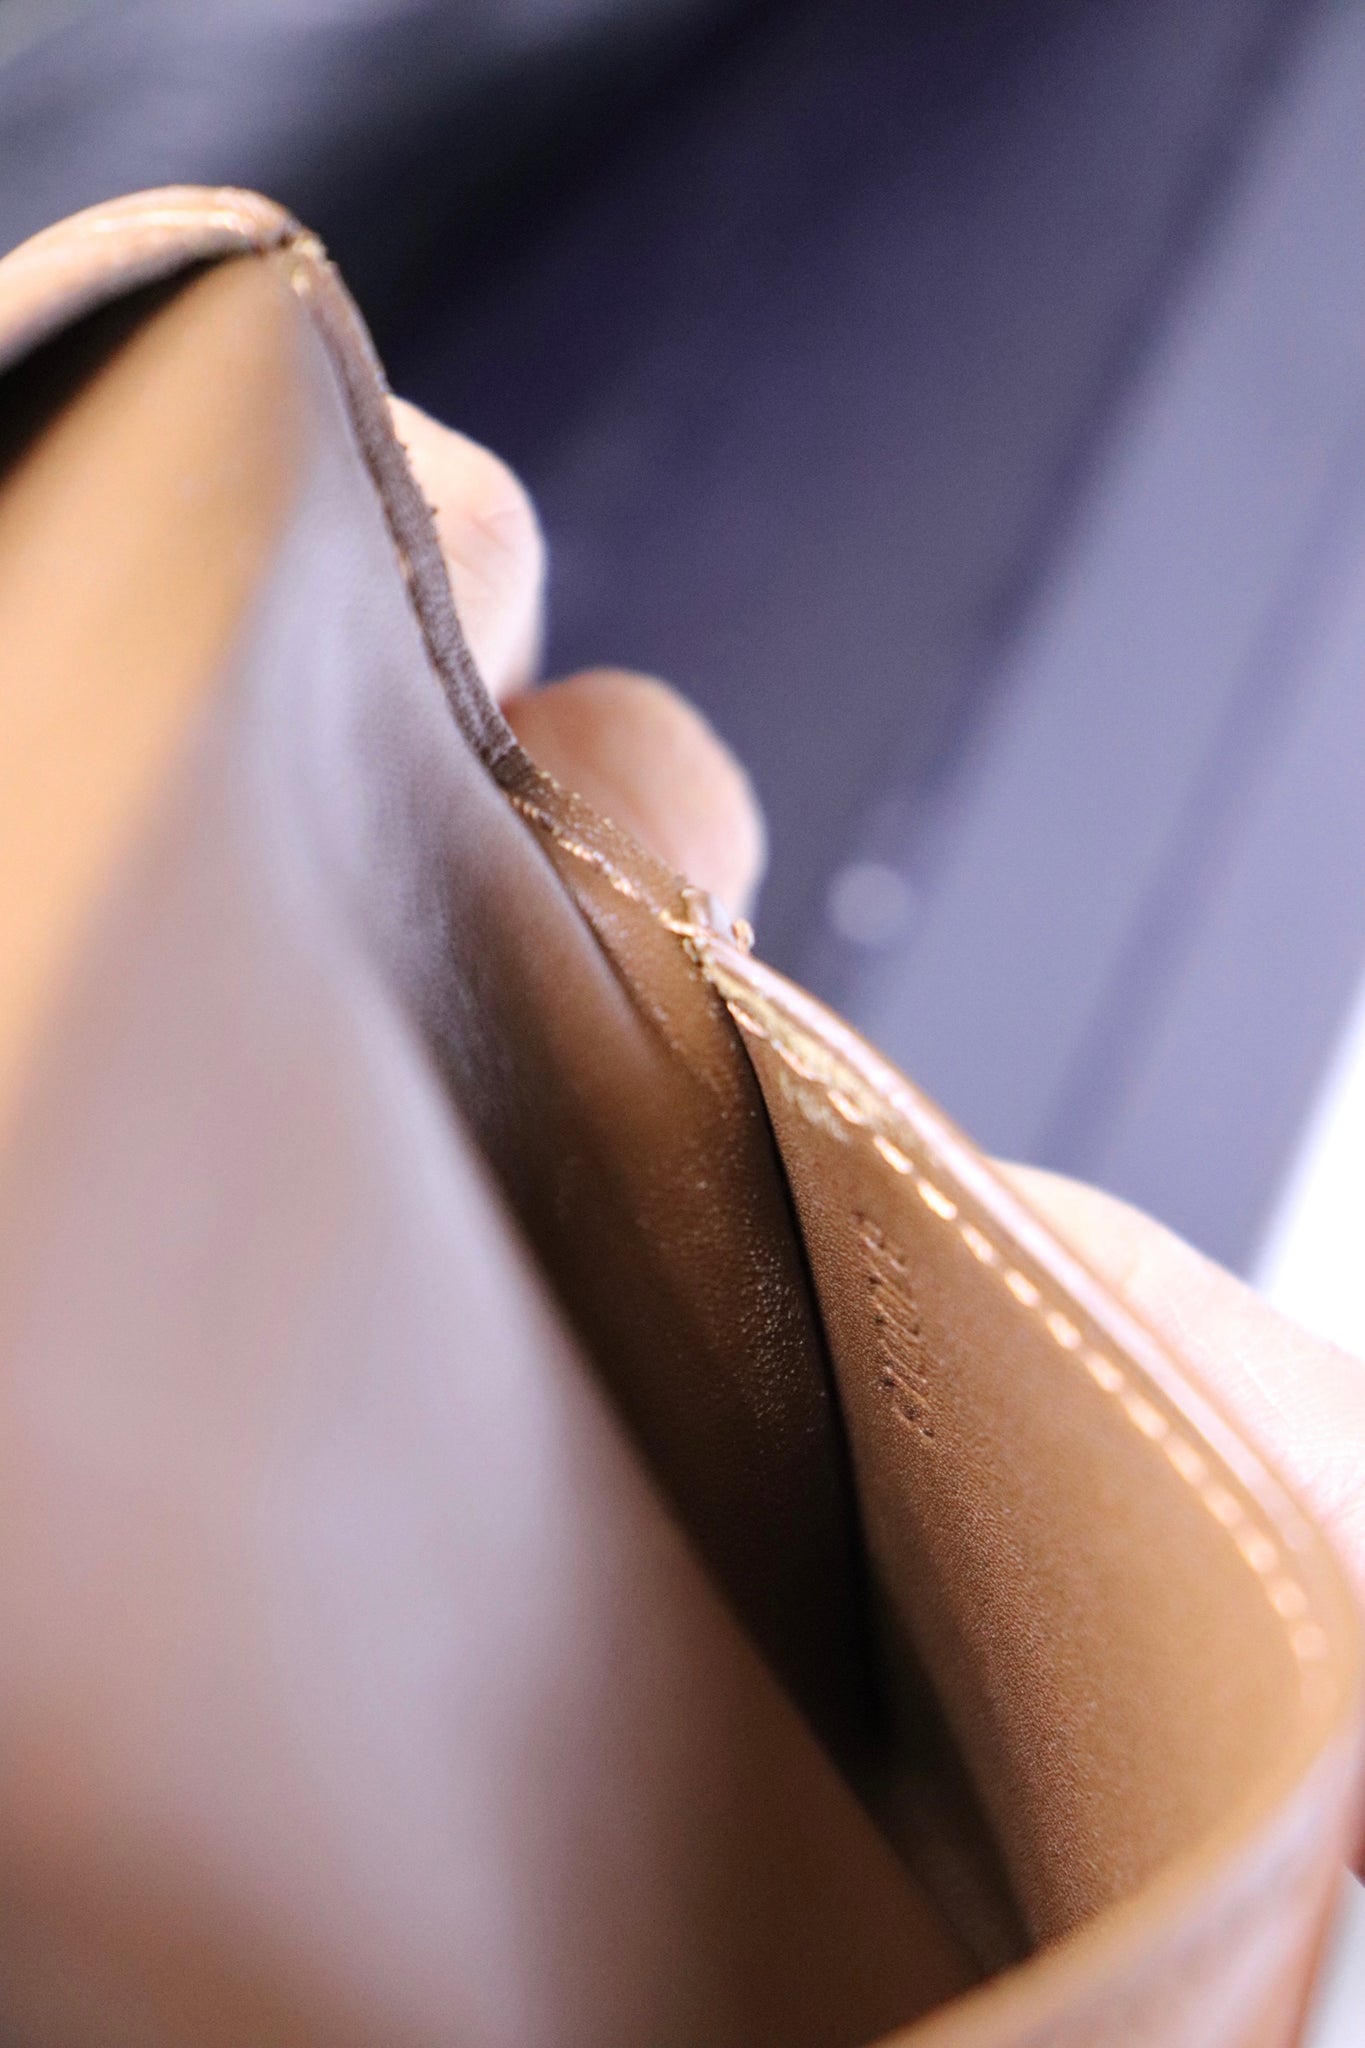 Louis Vuitton Epi Leather Ludlow Wallet